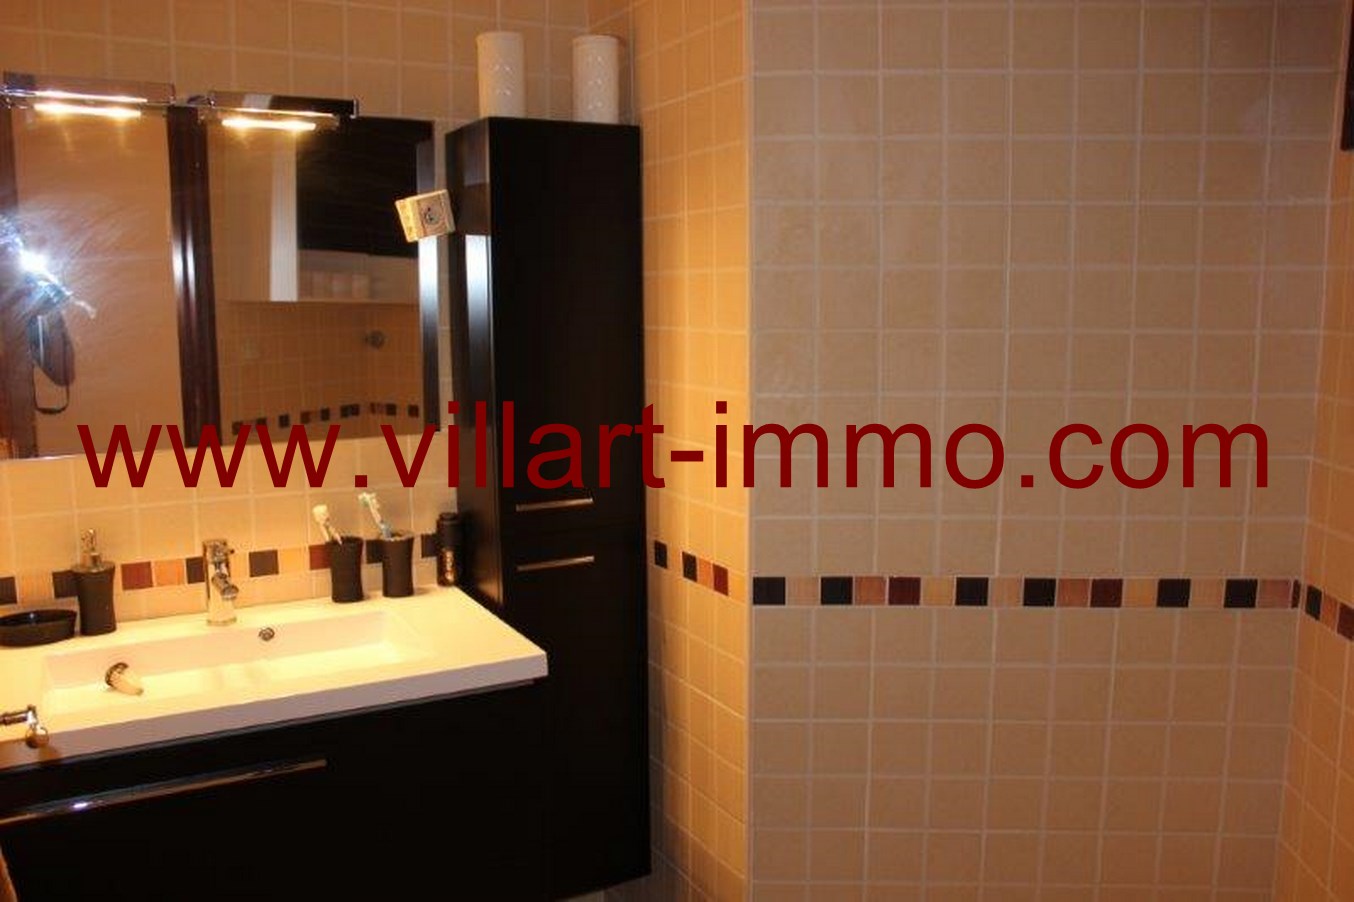 8-Location-Appartement-meublé-Tanger-salle de bain-L651-Villart-immo